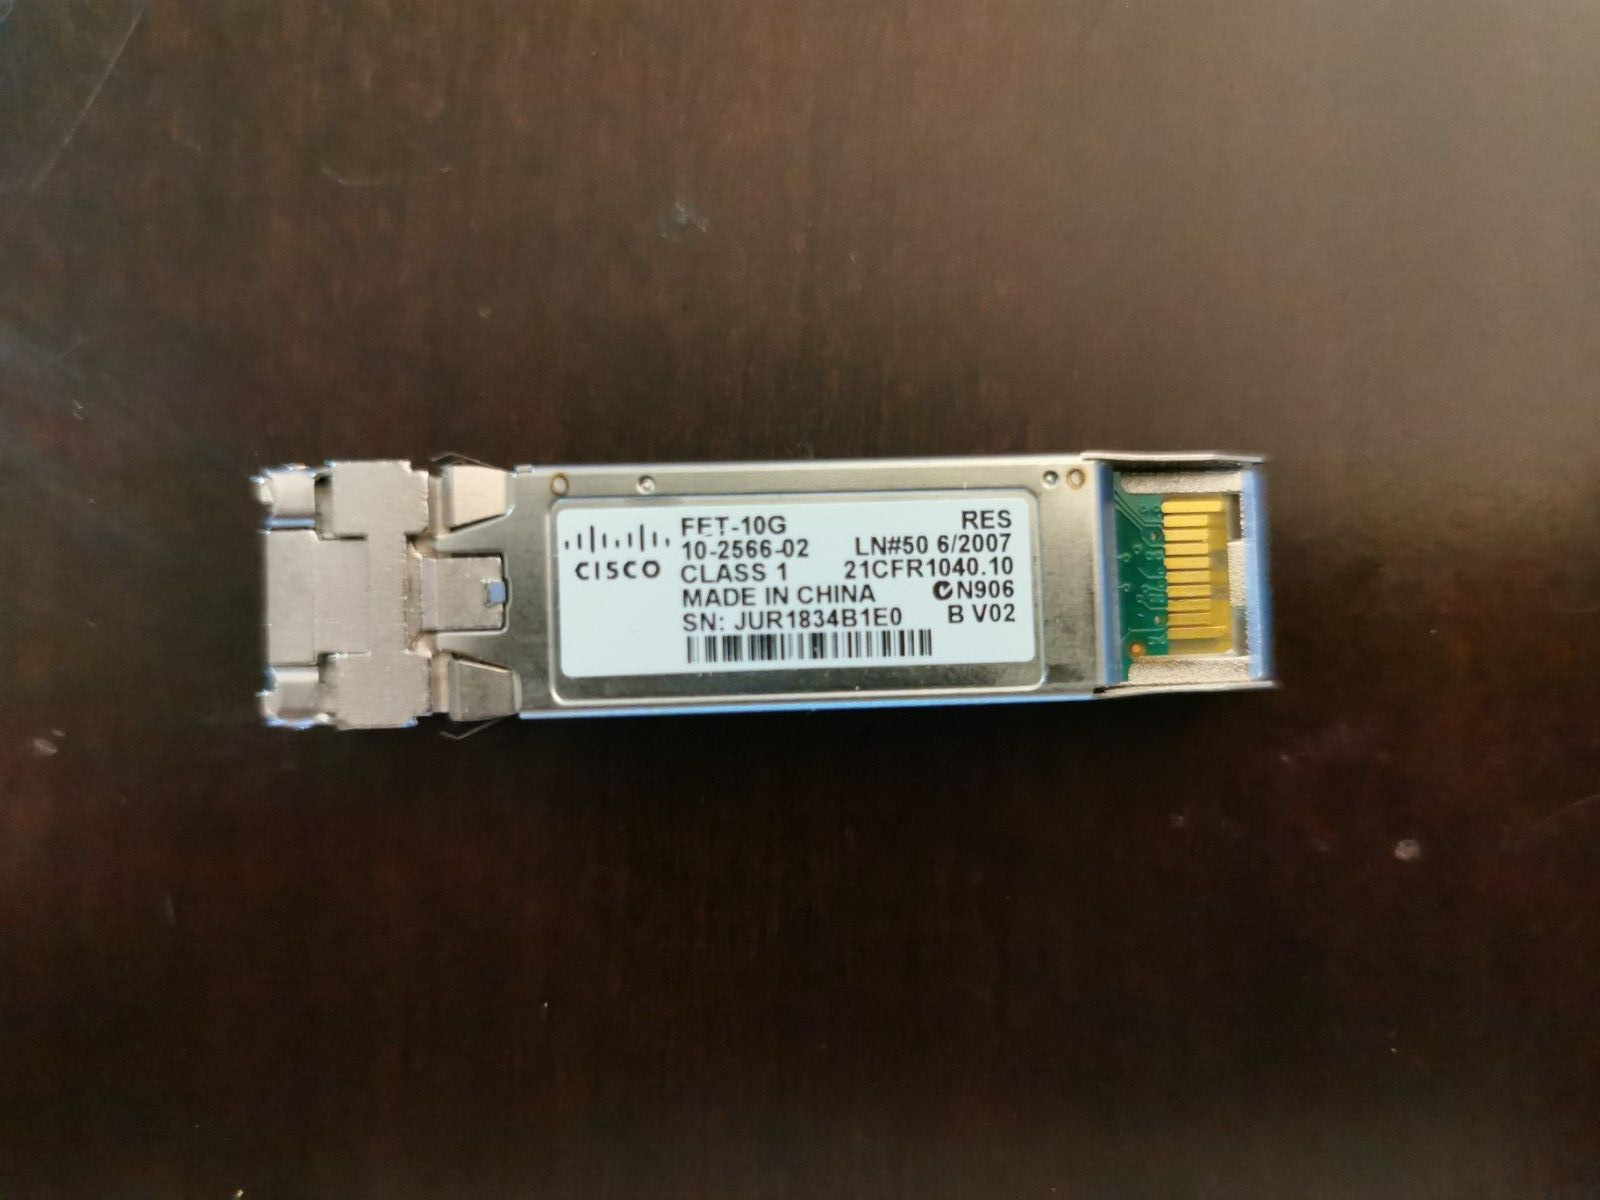 PACK OF 2 Genuine Cisco FET-10G 10-2566-02 10G